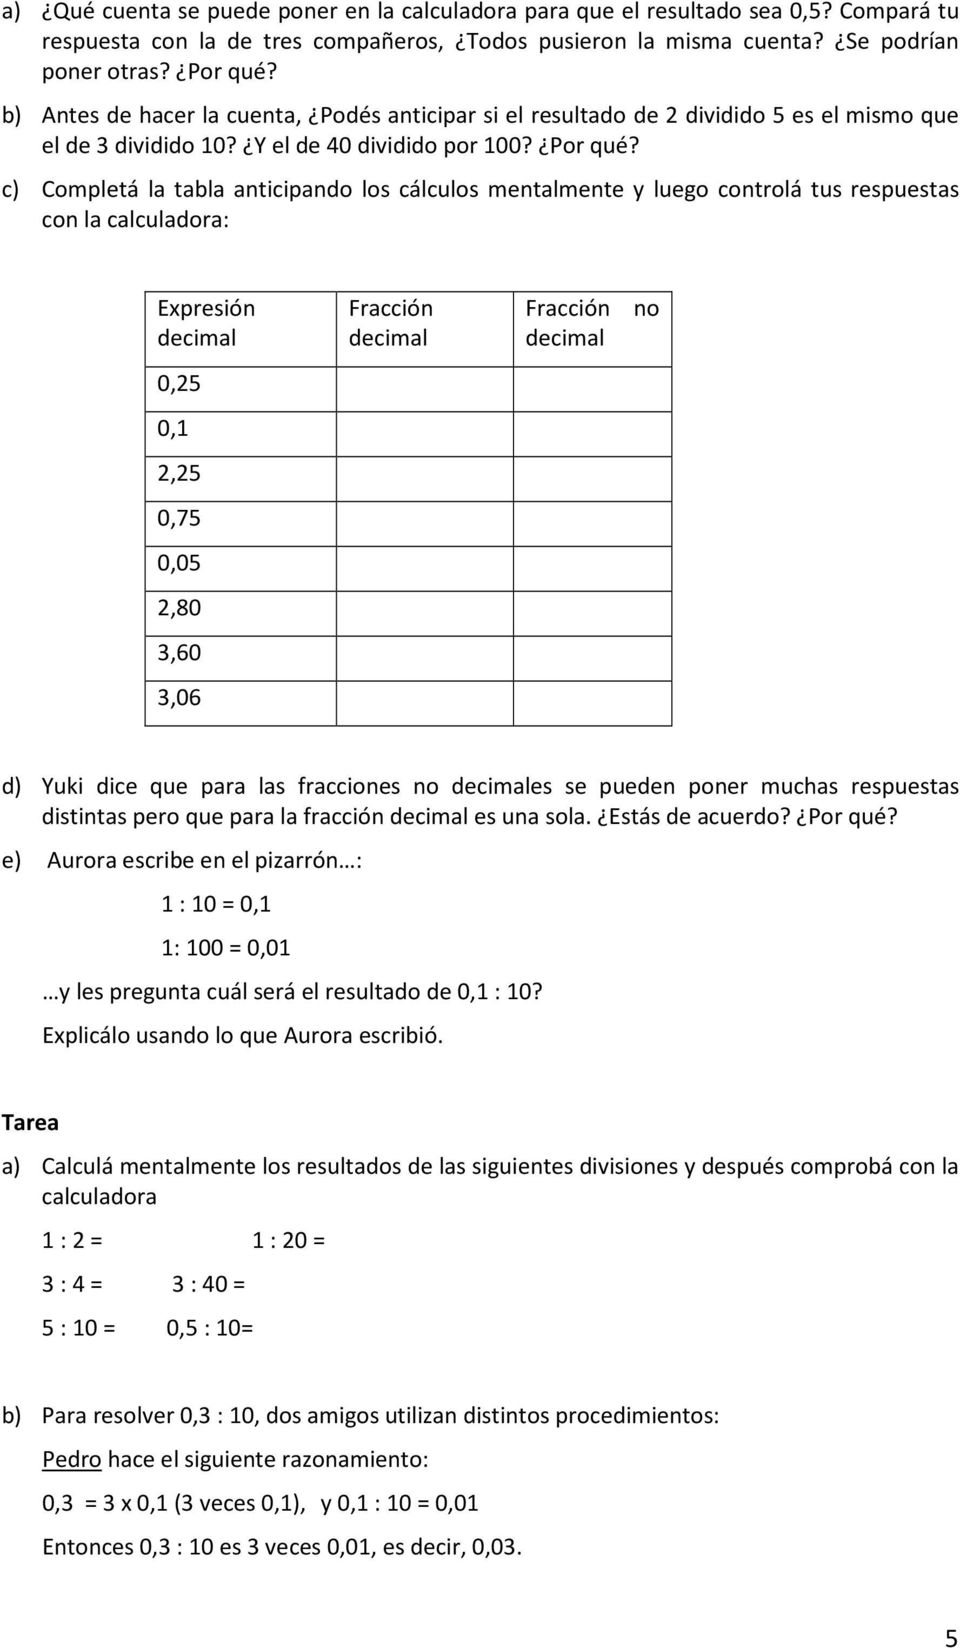 c) Completá la tabla anticipando los cálculos mentalmente y luego controlá tus respuestas con la calculadora: Expresión decimal 0,25 0,1 2,25 0,75 0,05 2,80 3,60 3,06 Fracción decimal Fracción no